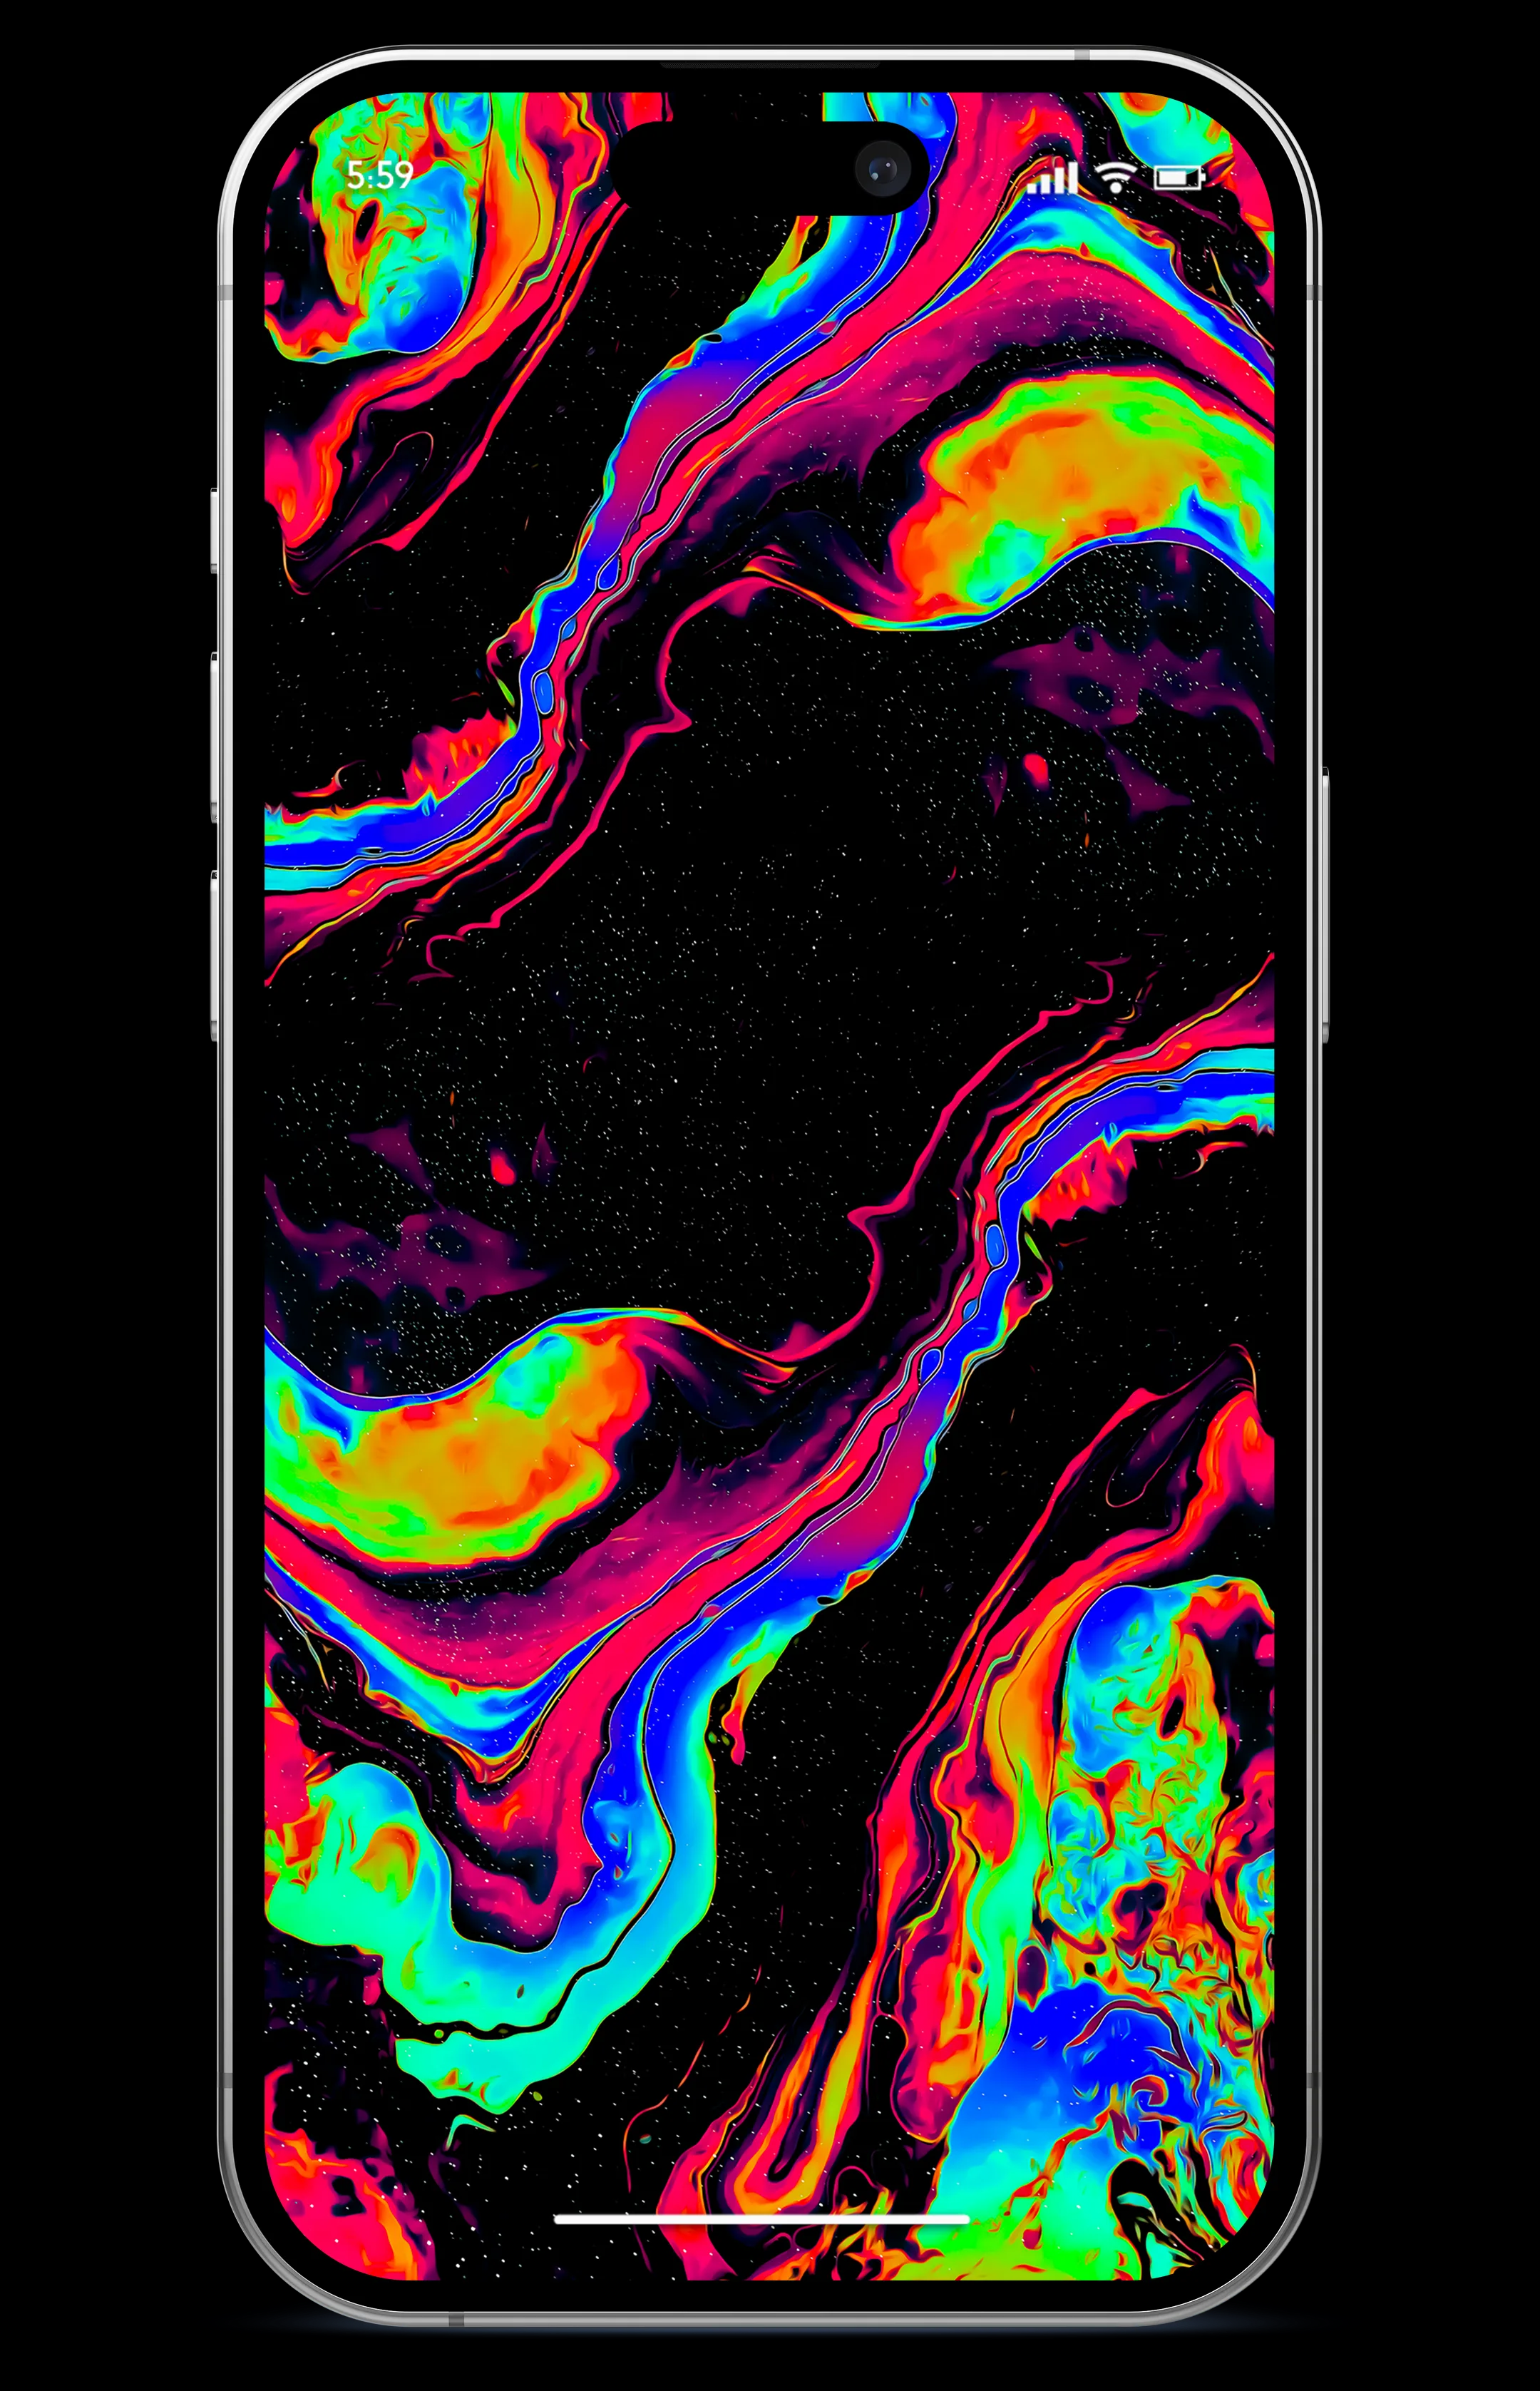 100+] Iphone Dark Wallpapers | Wallpapers.com